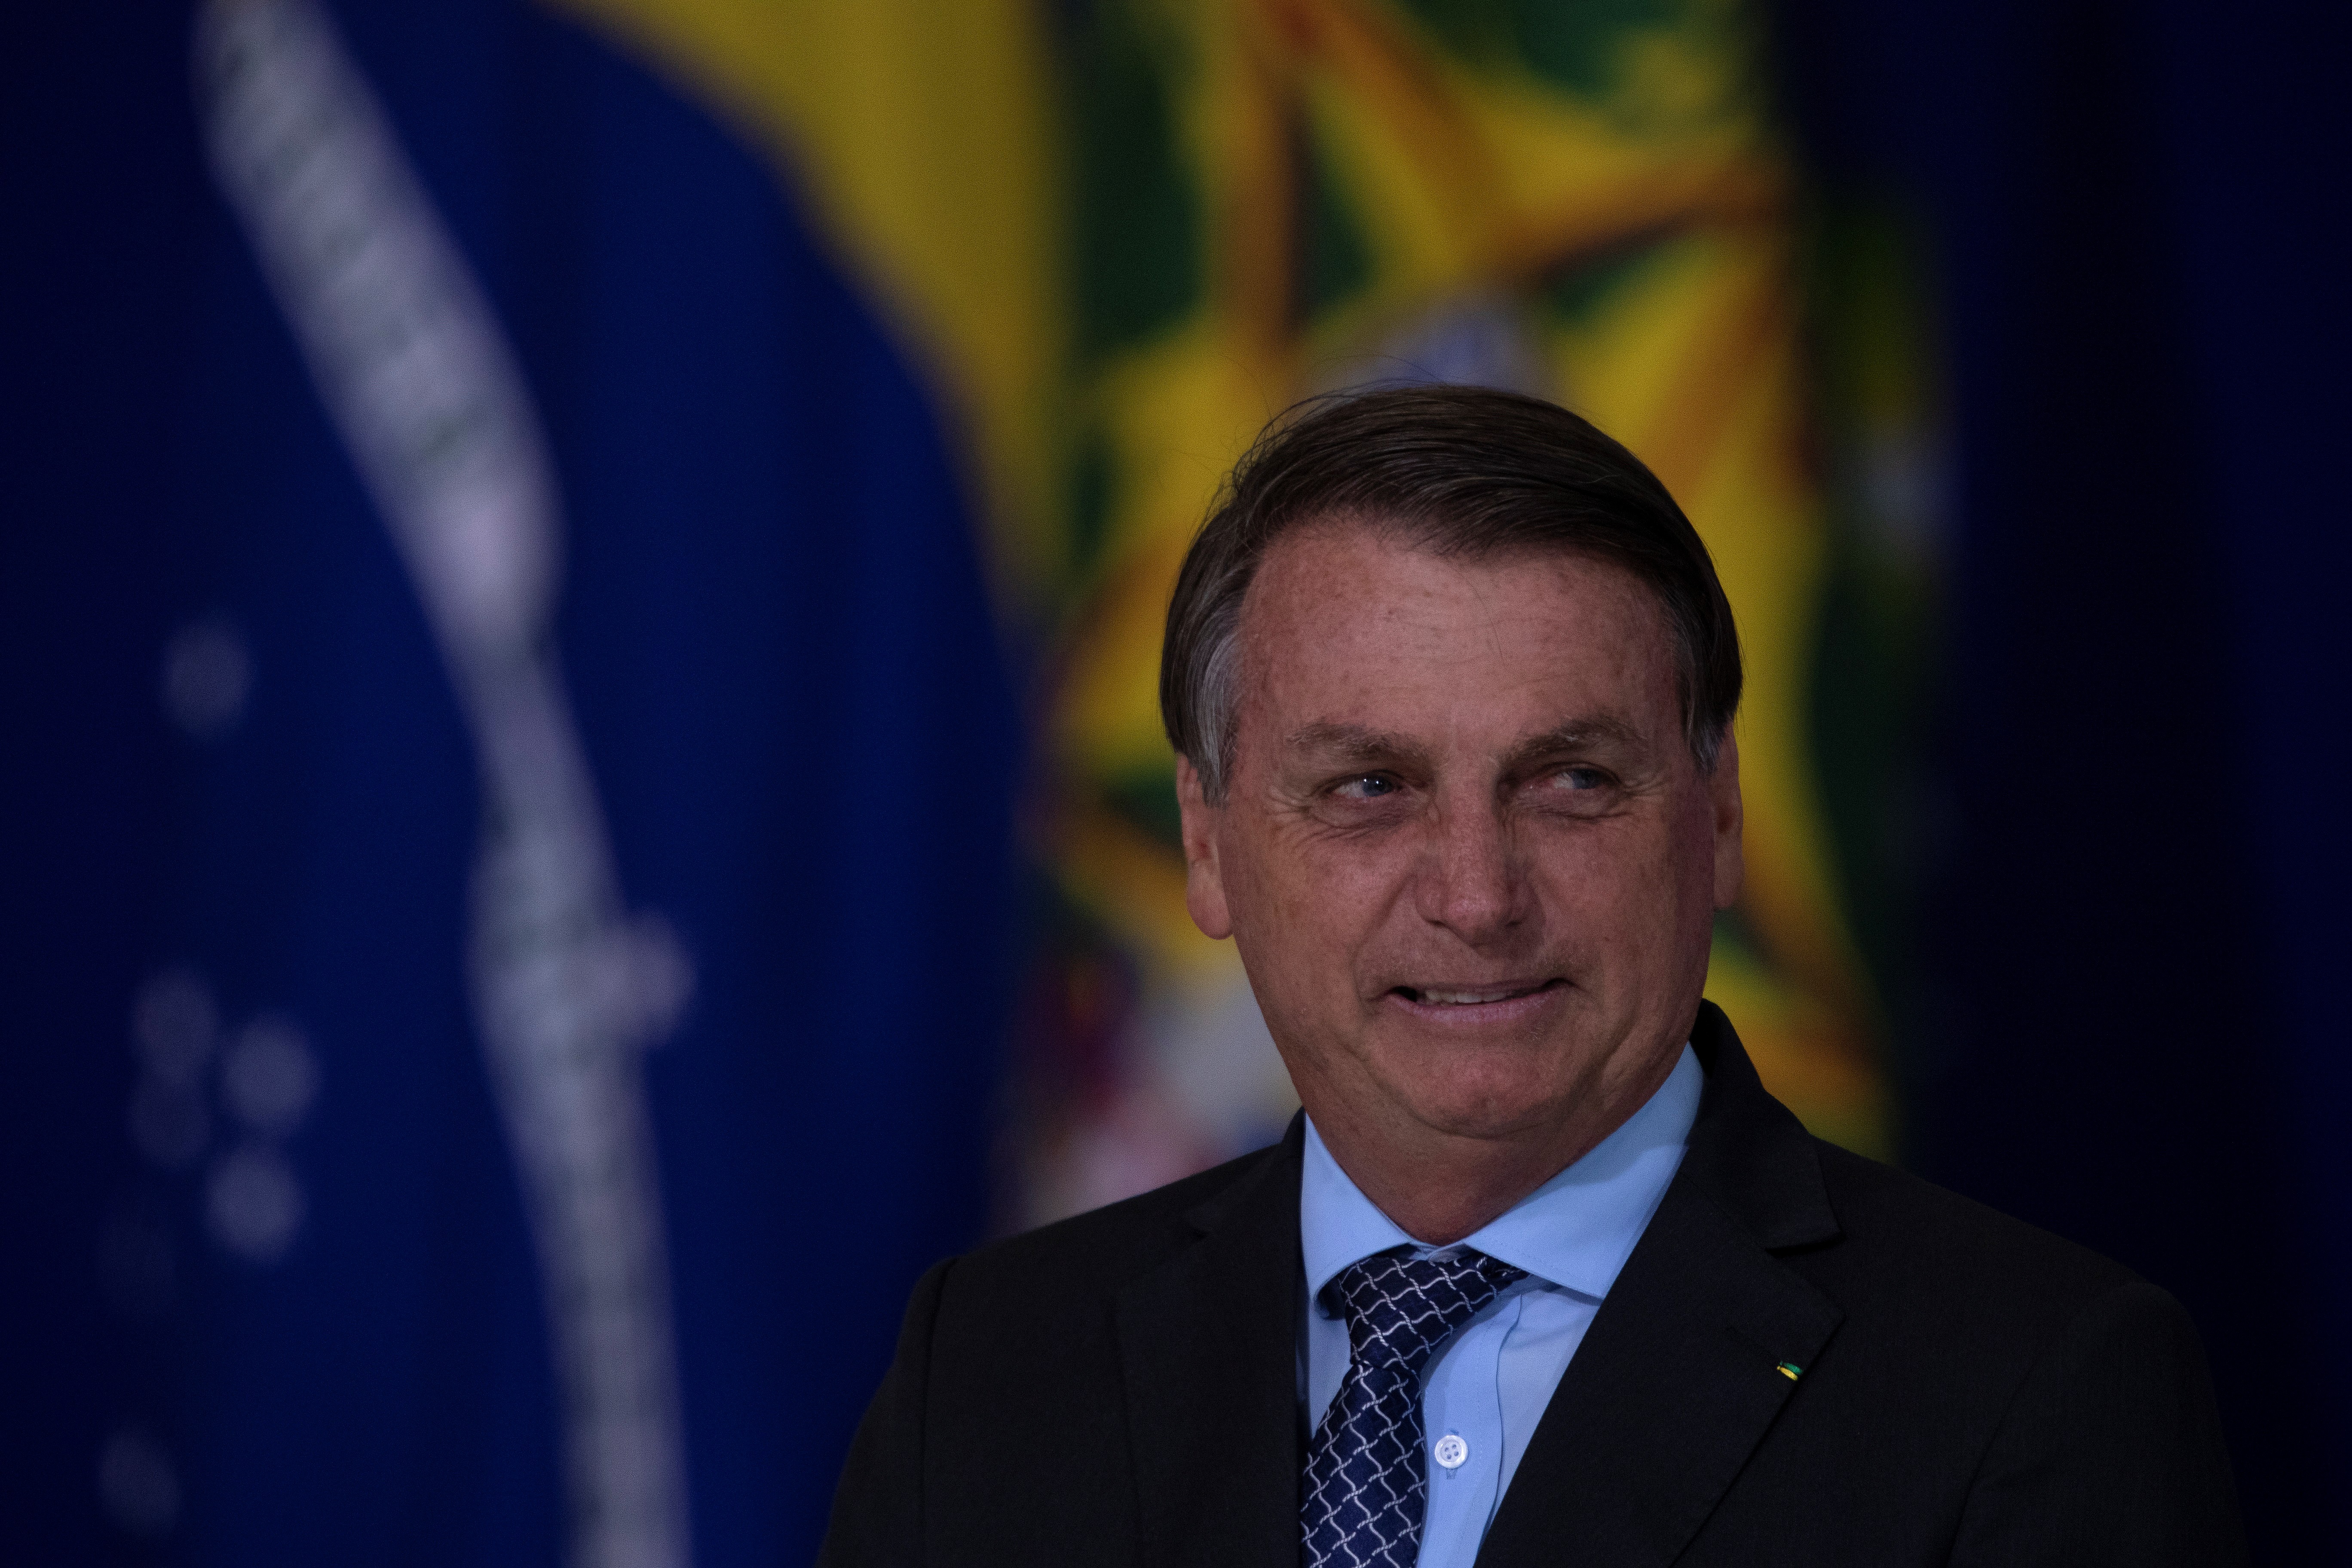 Bolsonaro inicia reforma ministerial apuntando a las elecciones de 2022